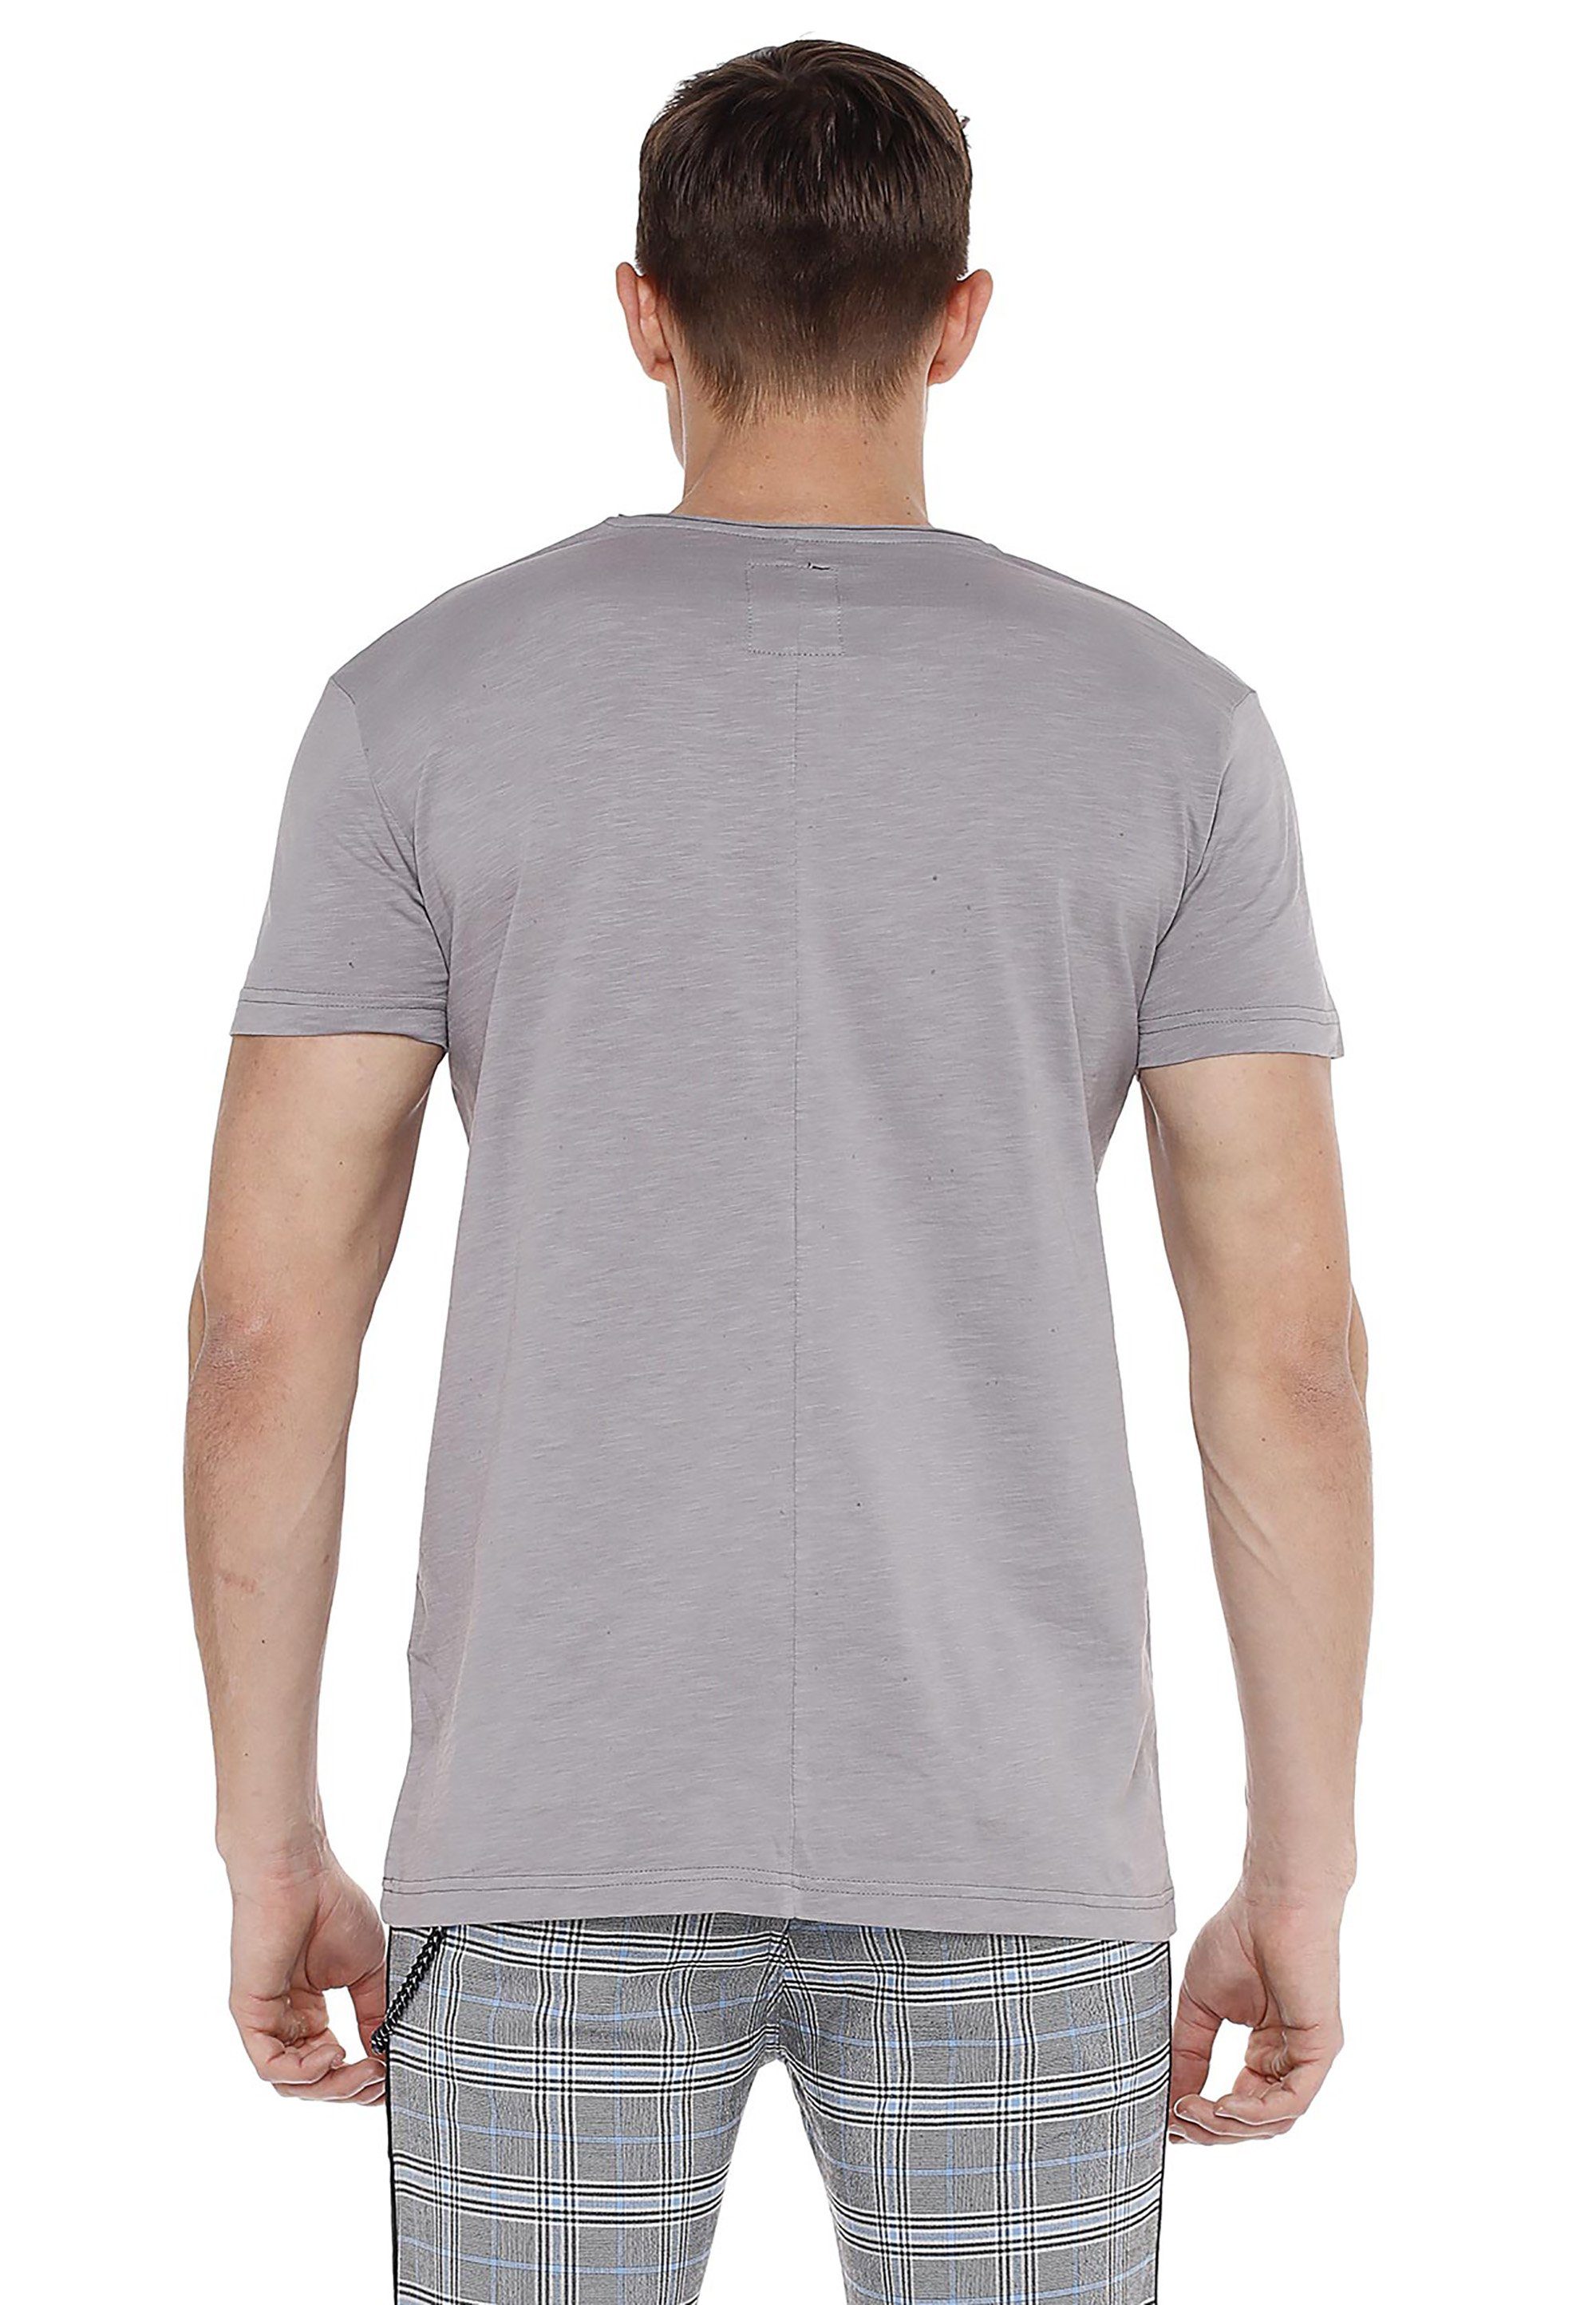 & Loose-Fit T-Shirt im grau Baxx Cipo